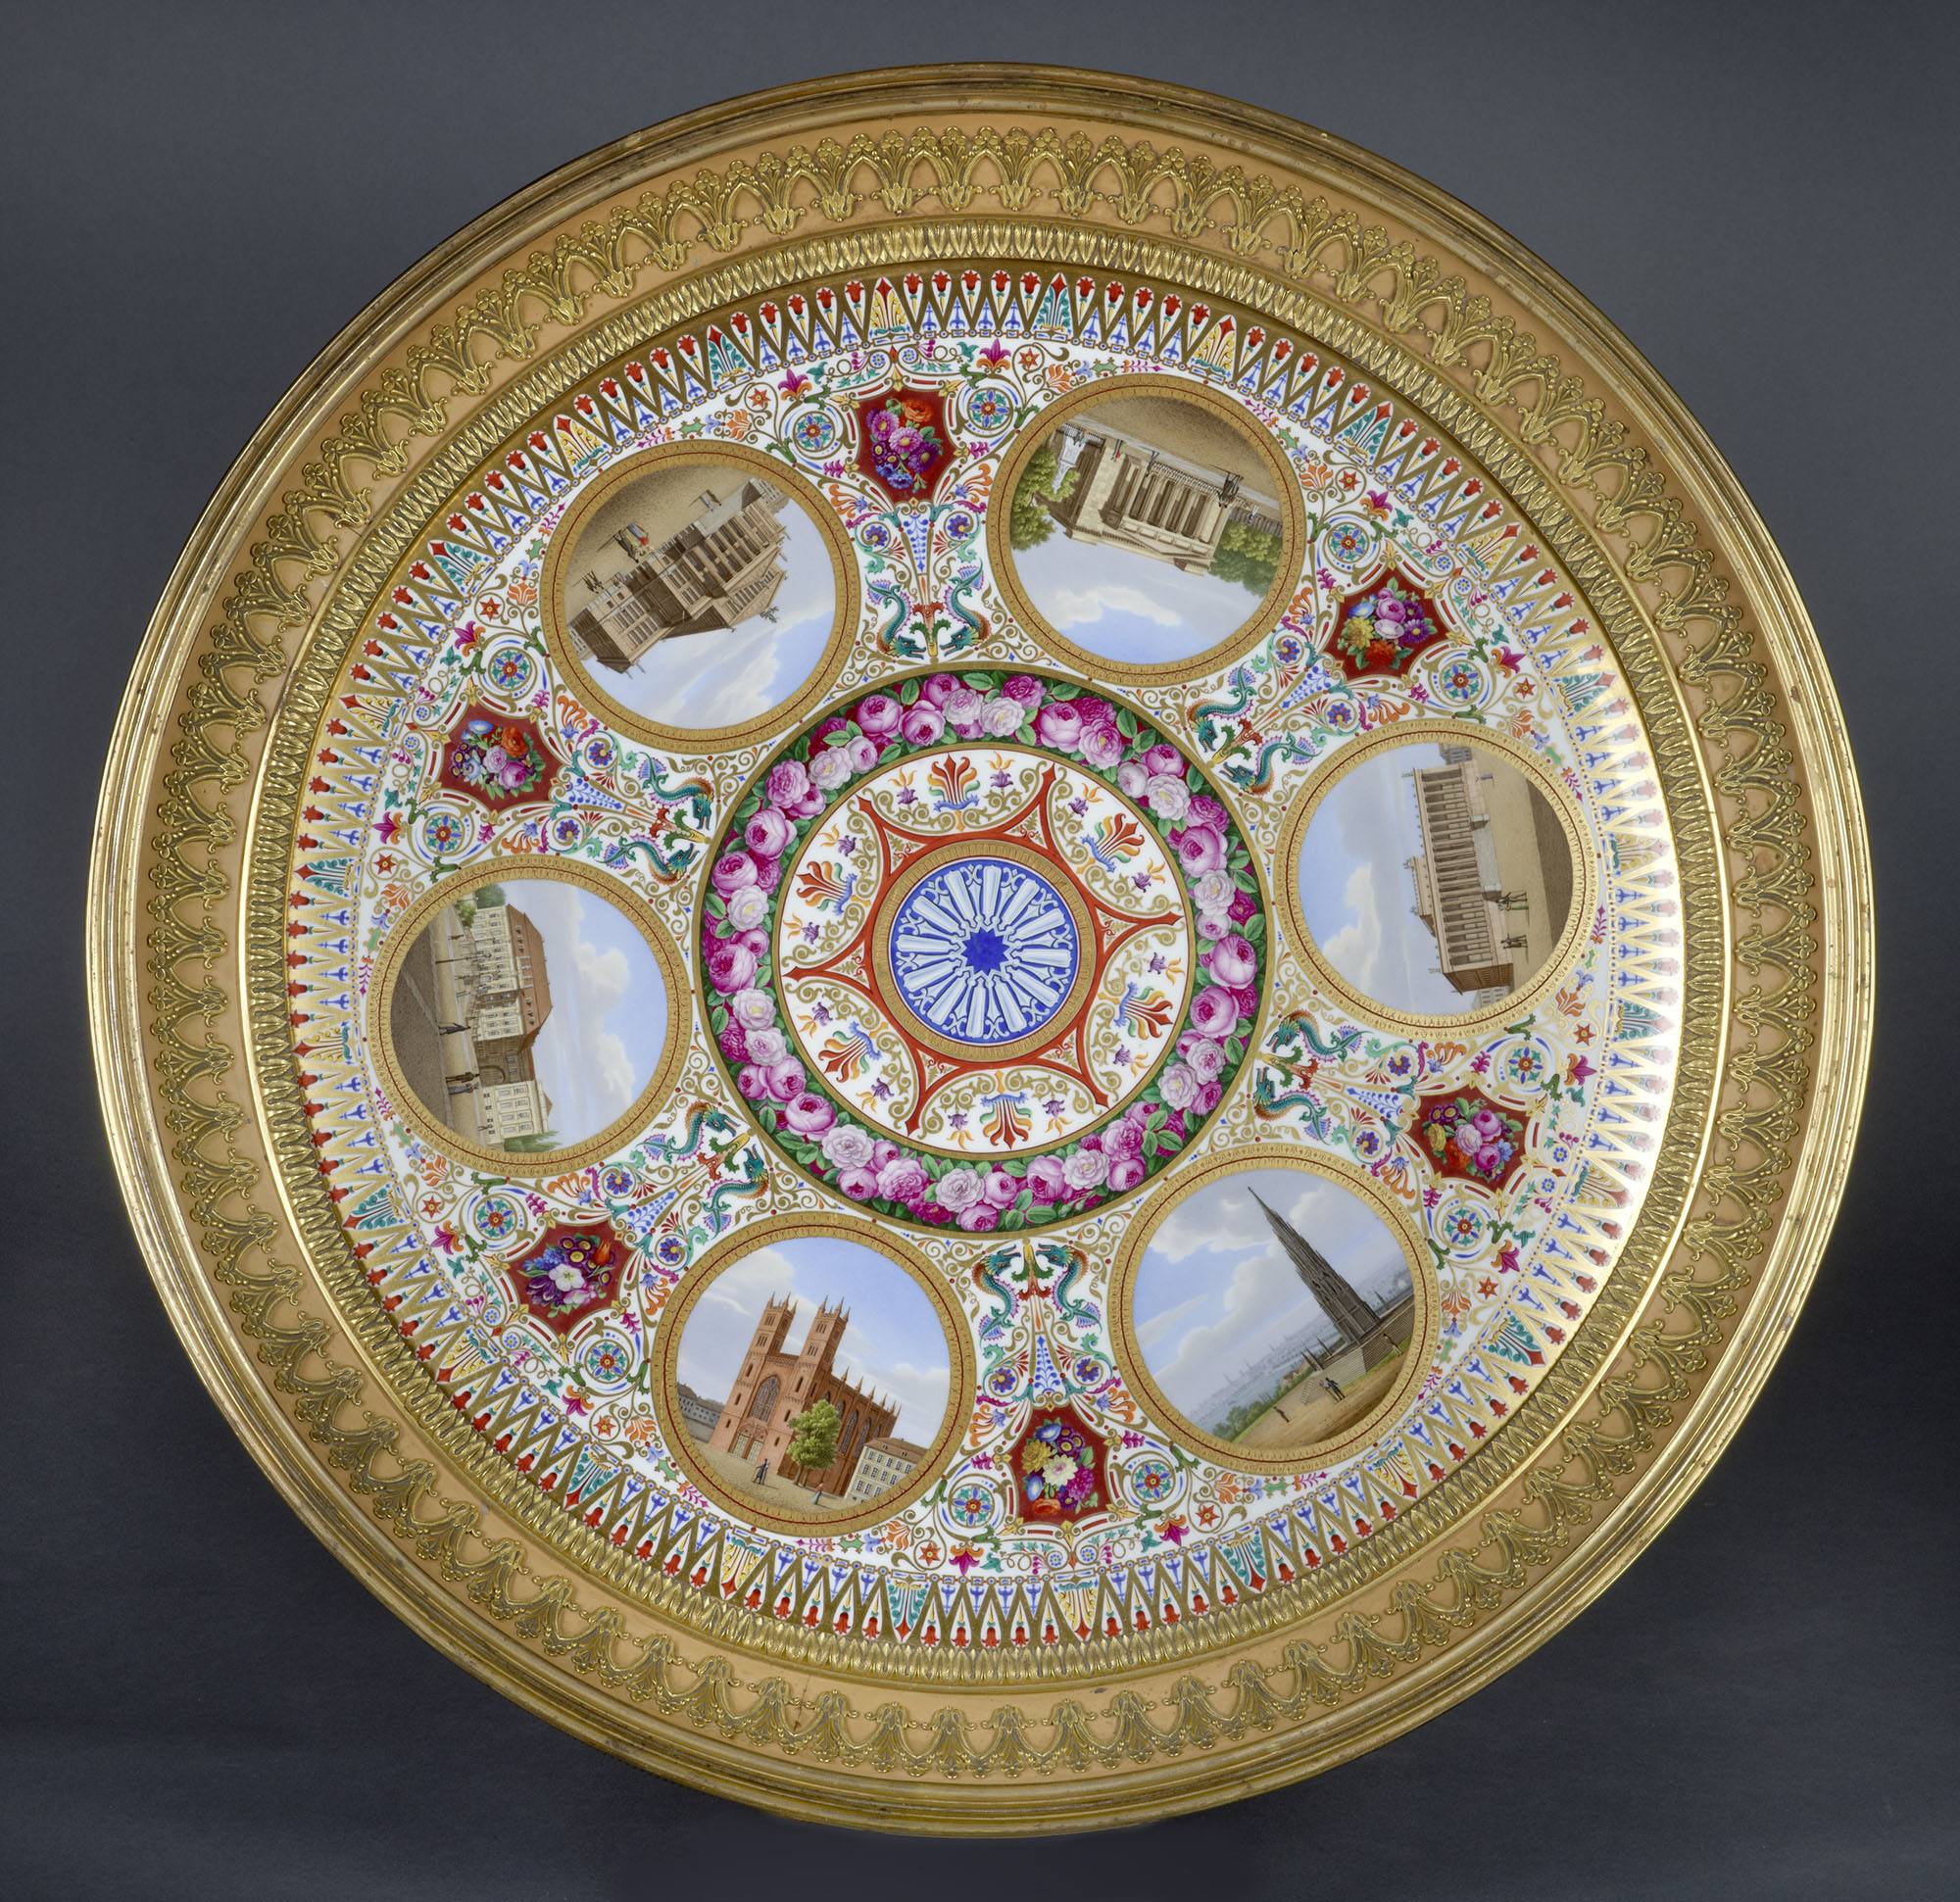 Karl Friedrich Schinkel (1781 - 1841), porcelain tabletop produced by the Royal Porcelain Manufactory. _Stiftung Preußische Schlösser und Gärten Berlin-Brandenburg, In. Nr. IV 30_. Photo: Wolfgang Pfauder.